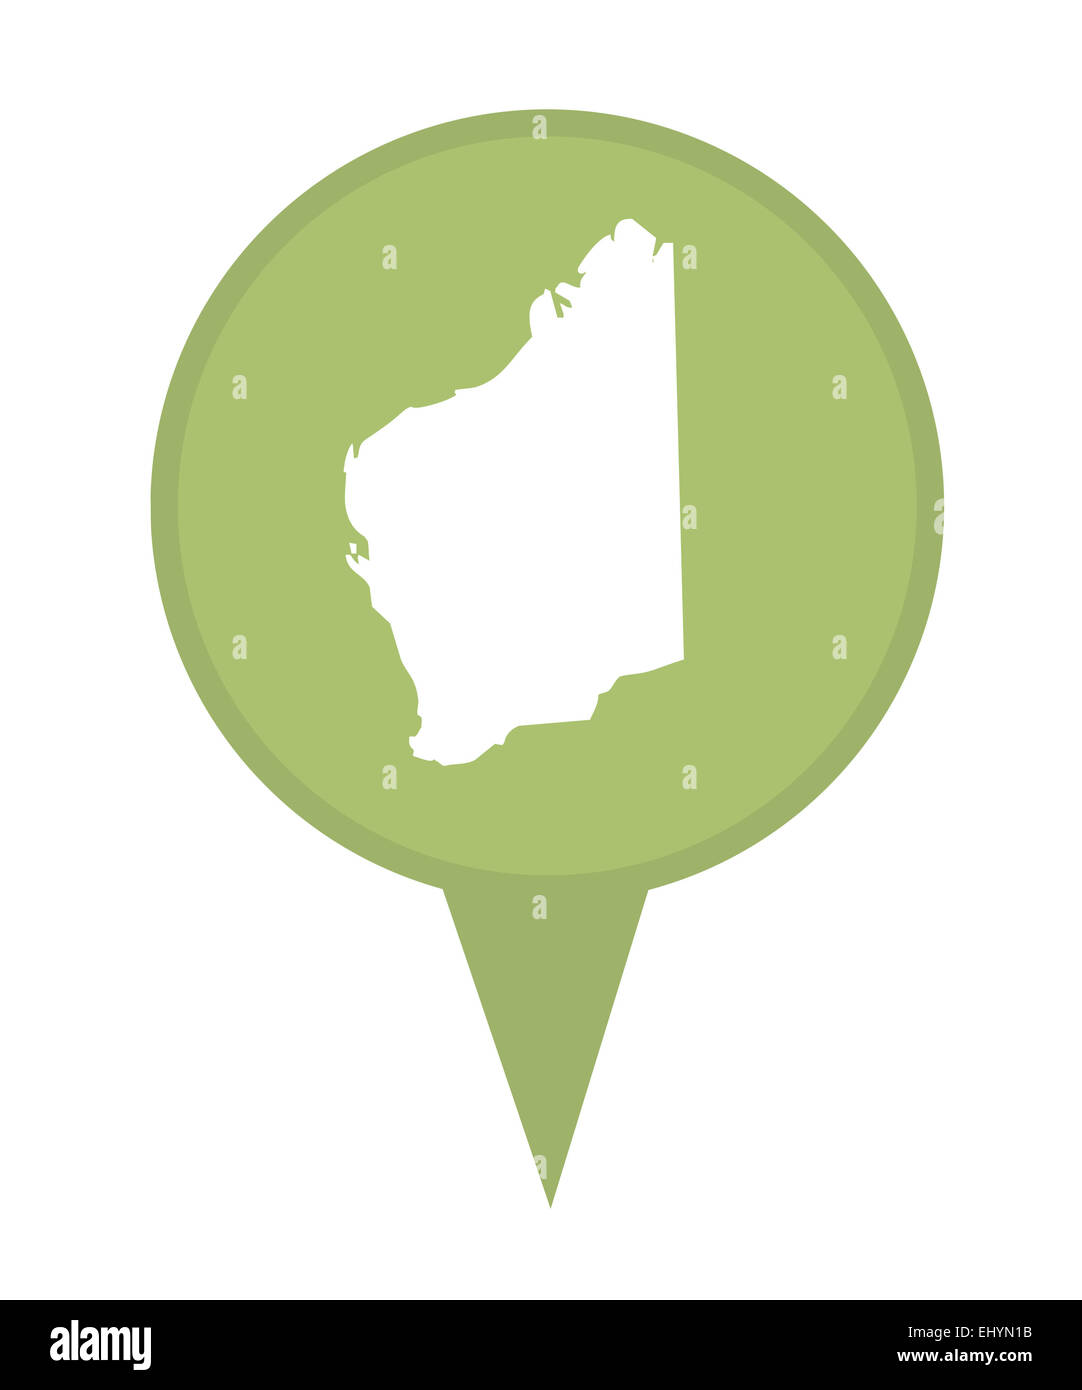 État de l'Australie de l'ouest de l'Australie site épingle isolé sur un fond blanc. Banque D'Images